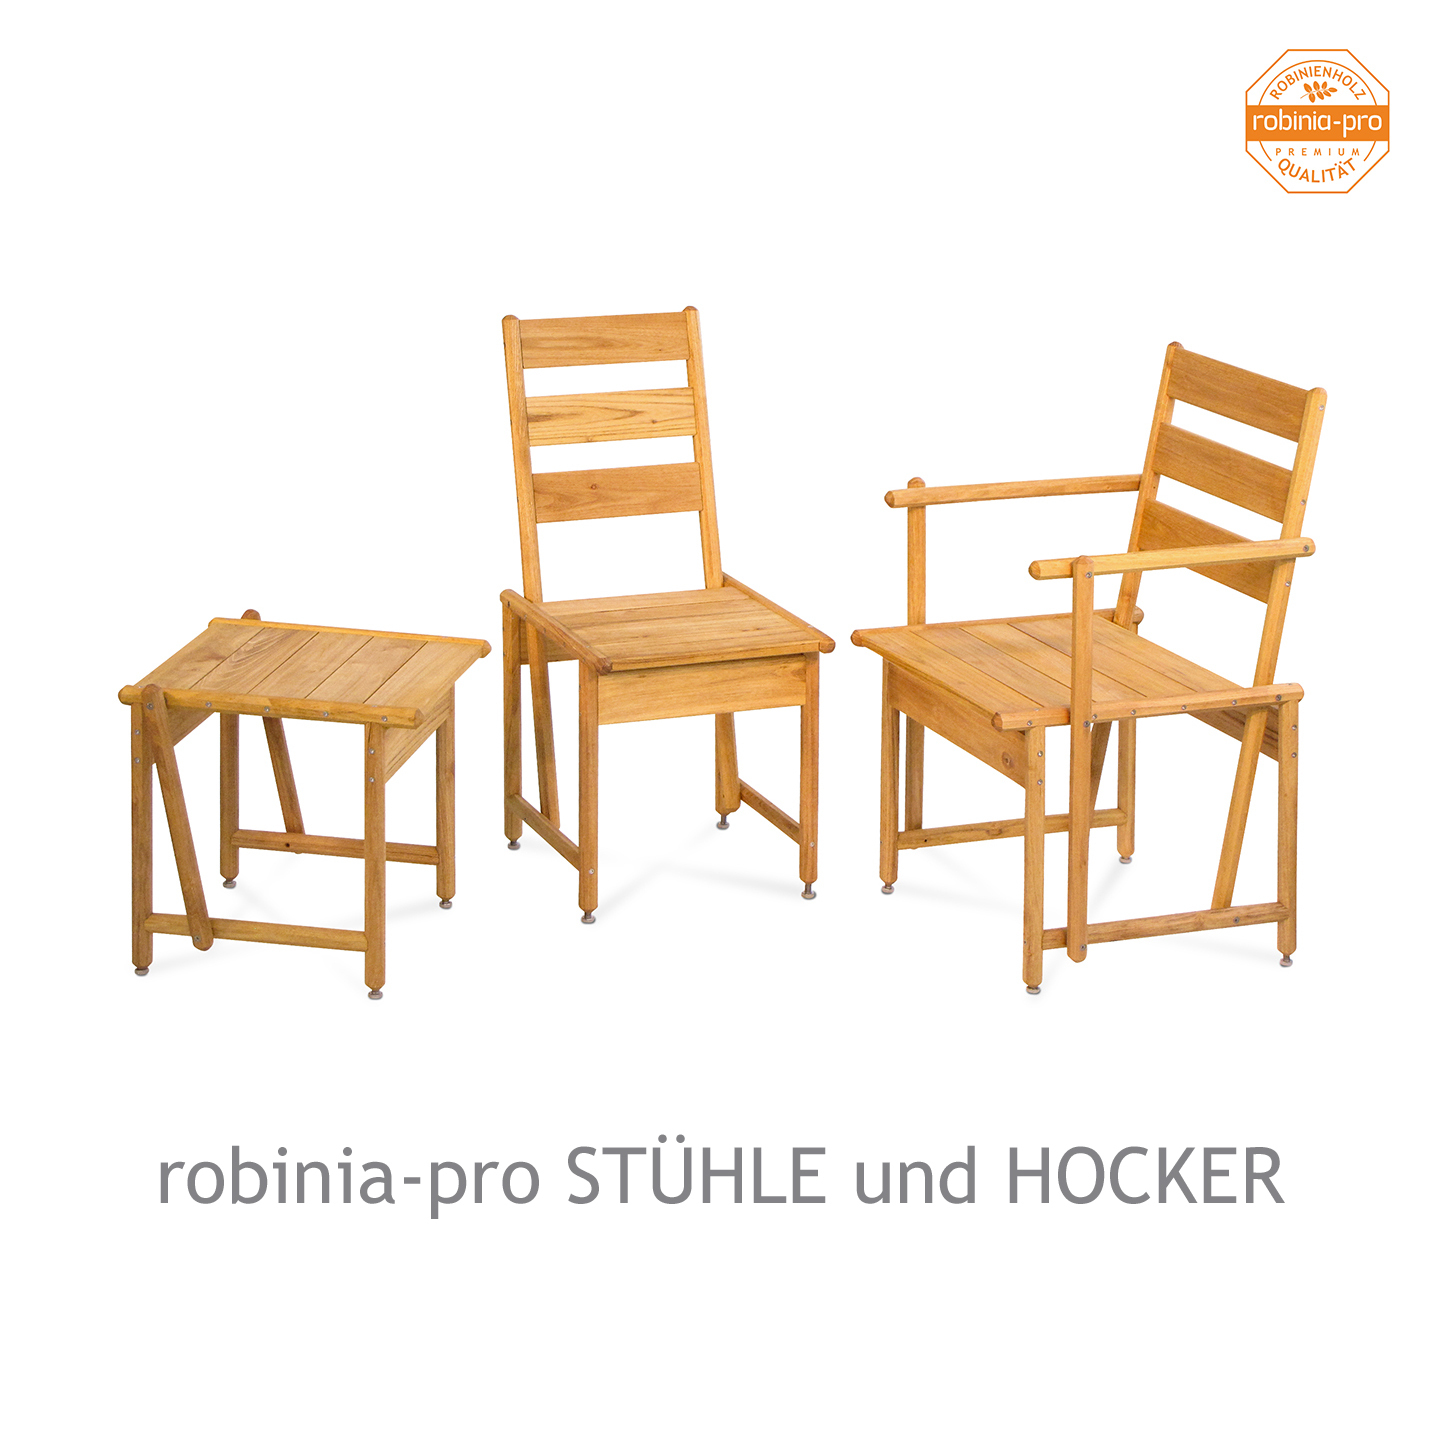 robinia-pro STÜHLE und HOCKER